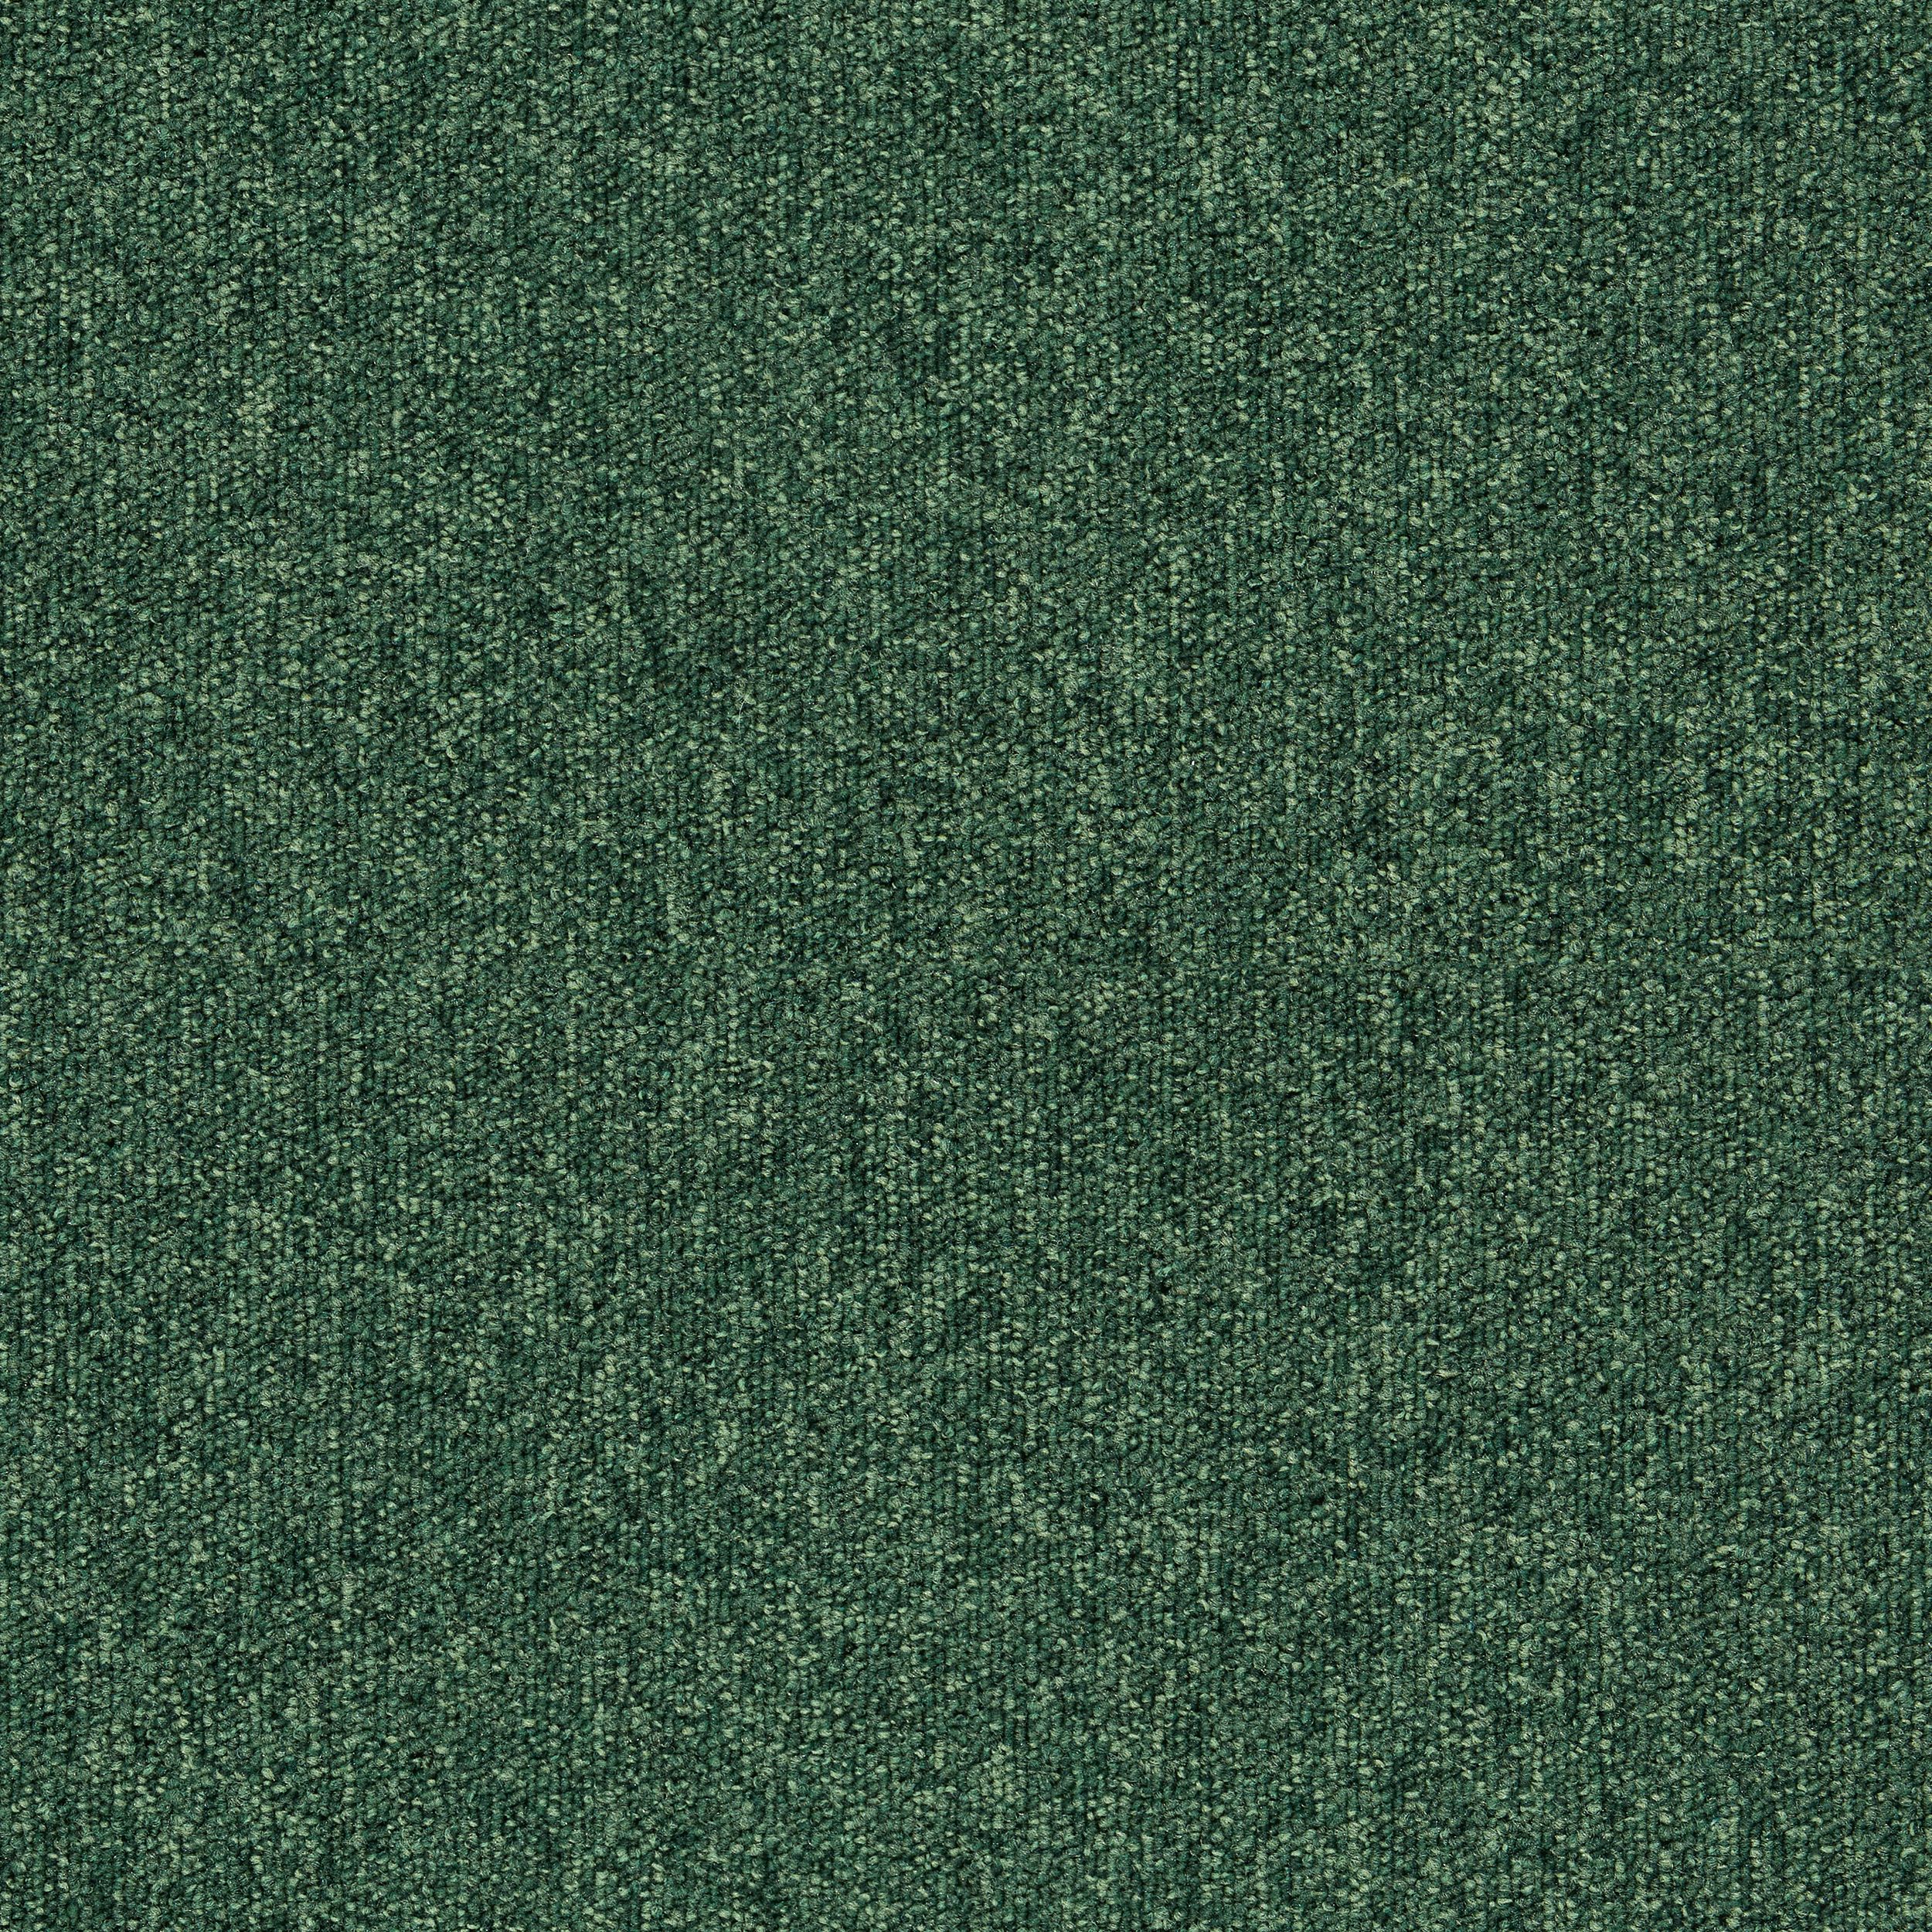 Heuga 727 Carpet Tile In Bottle Green afbeeldingnummer 4